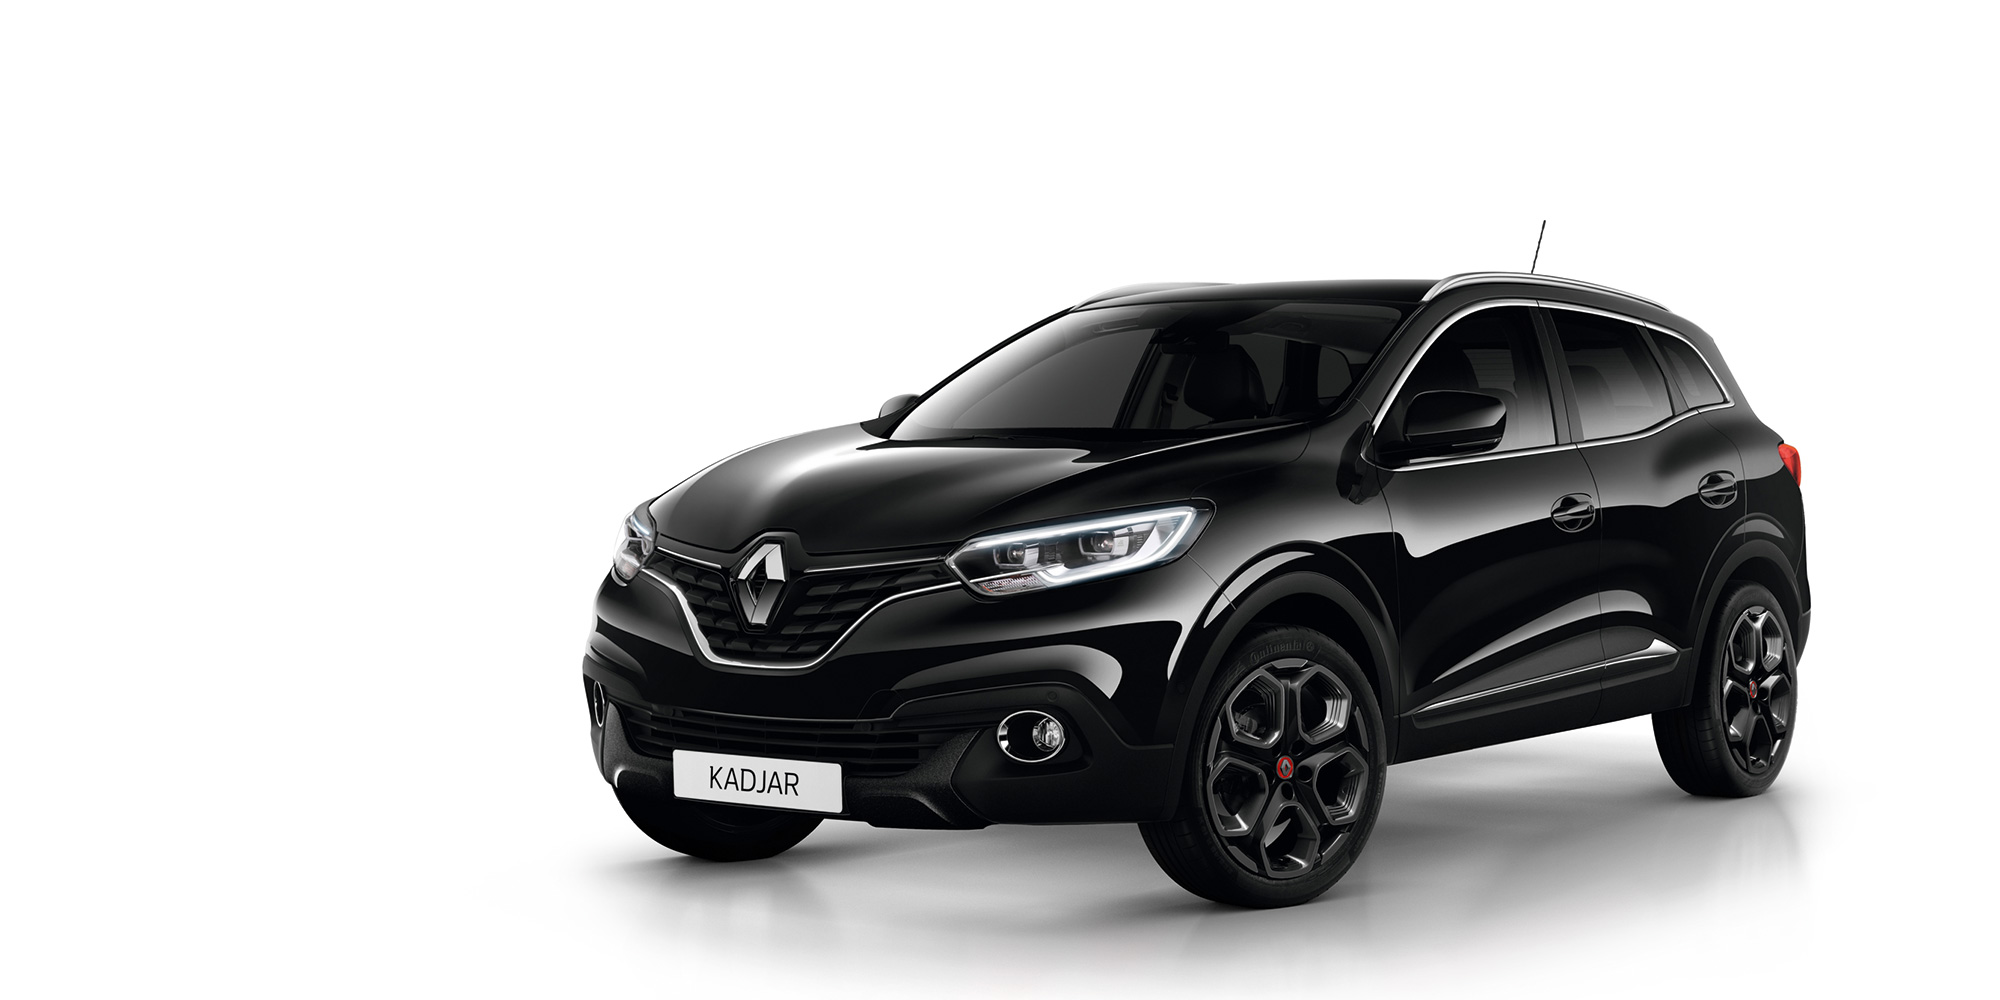 Kadjar, Crossborder, SUV, Sondermodell, Renault, 2016